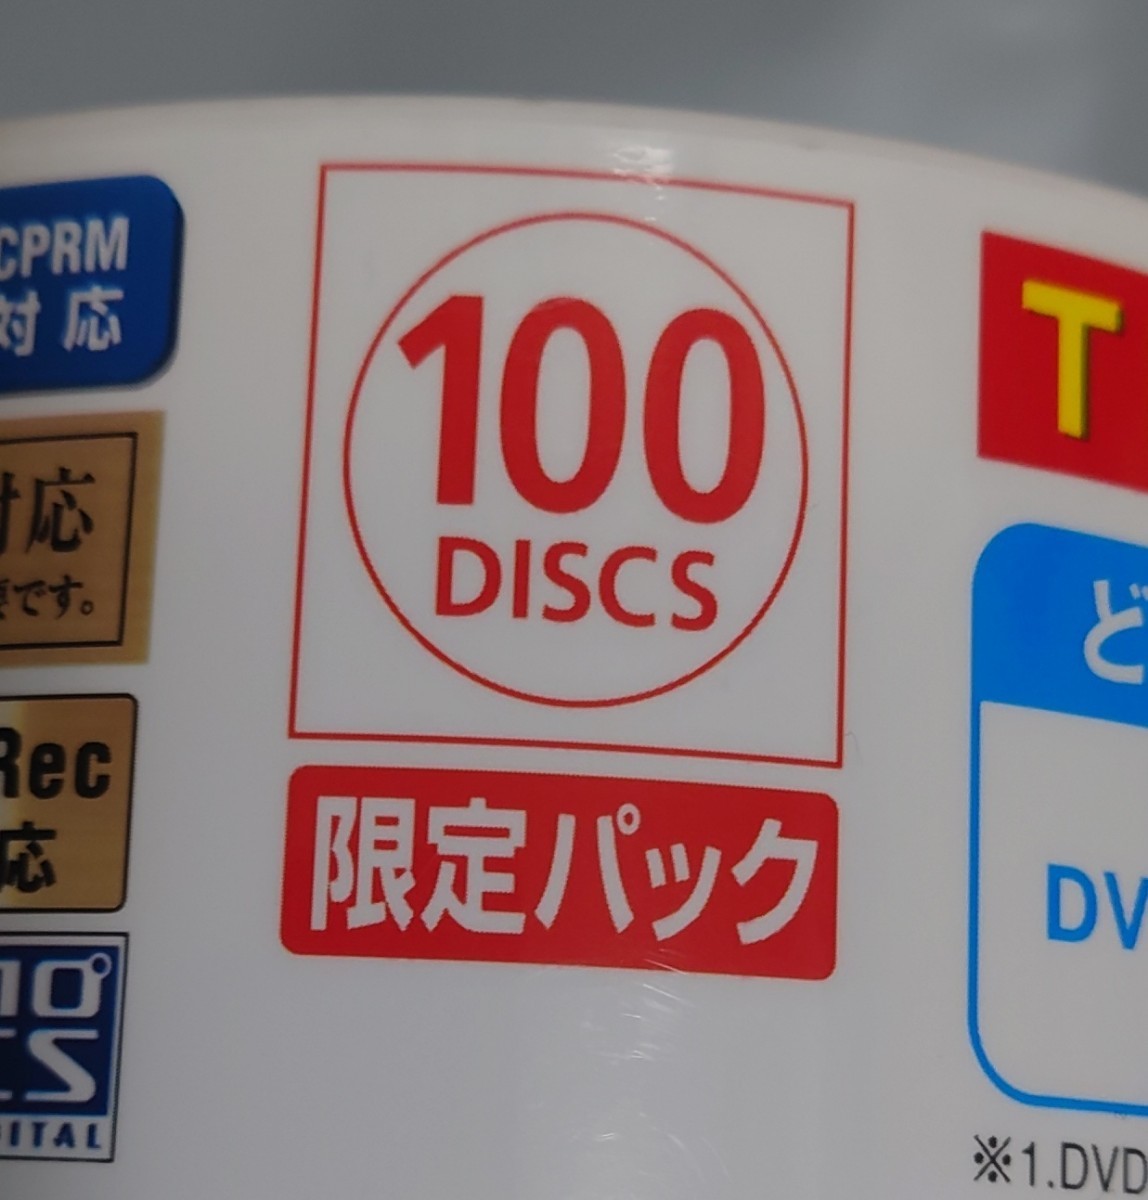 【送料込/匿名】太陽誘電 That's DVD-R デジタル放送録画用 CPRM対応 100枚入り未開封 日本製 DR-C12STY100BN スタートラボ スタート・ラボ_画像5